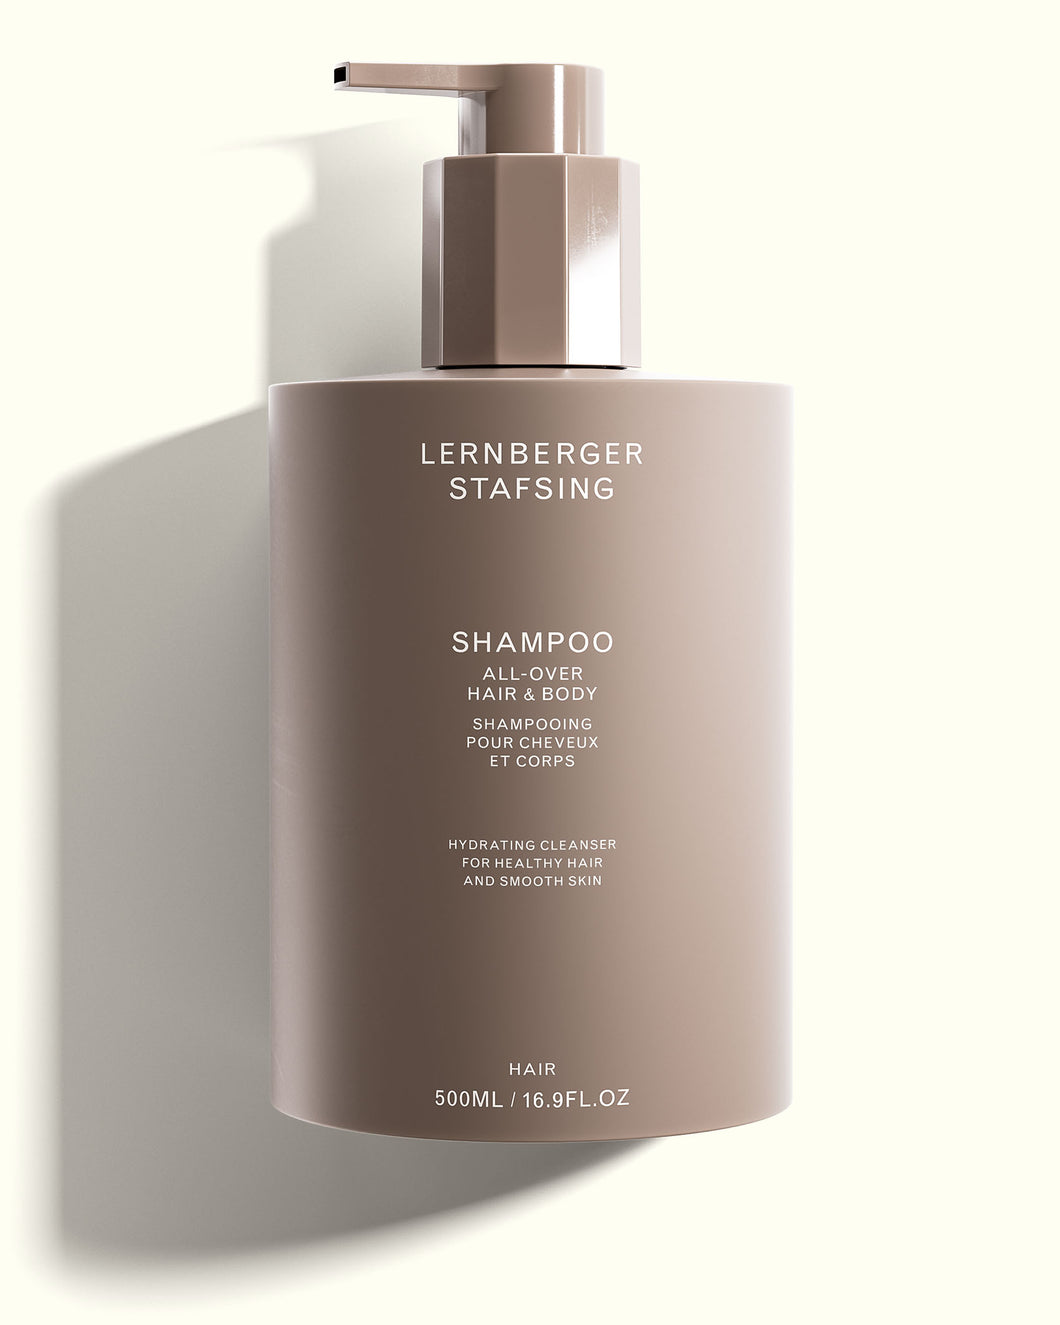 All-over Hair & Body Shampoo, 500ml